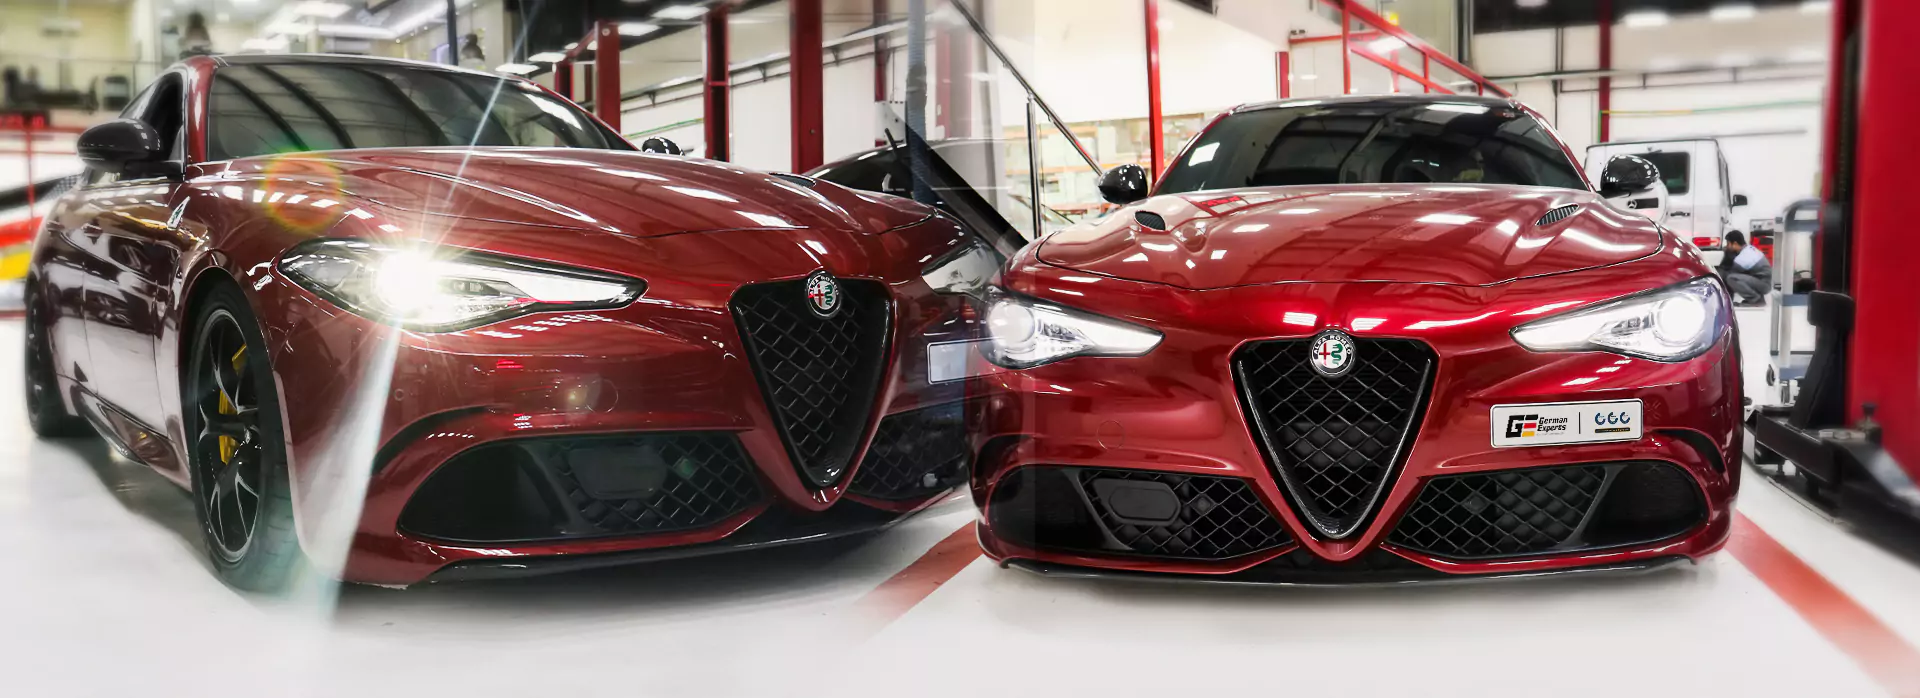 Alfa Romeo Repair Dubai